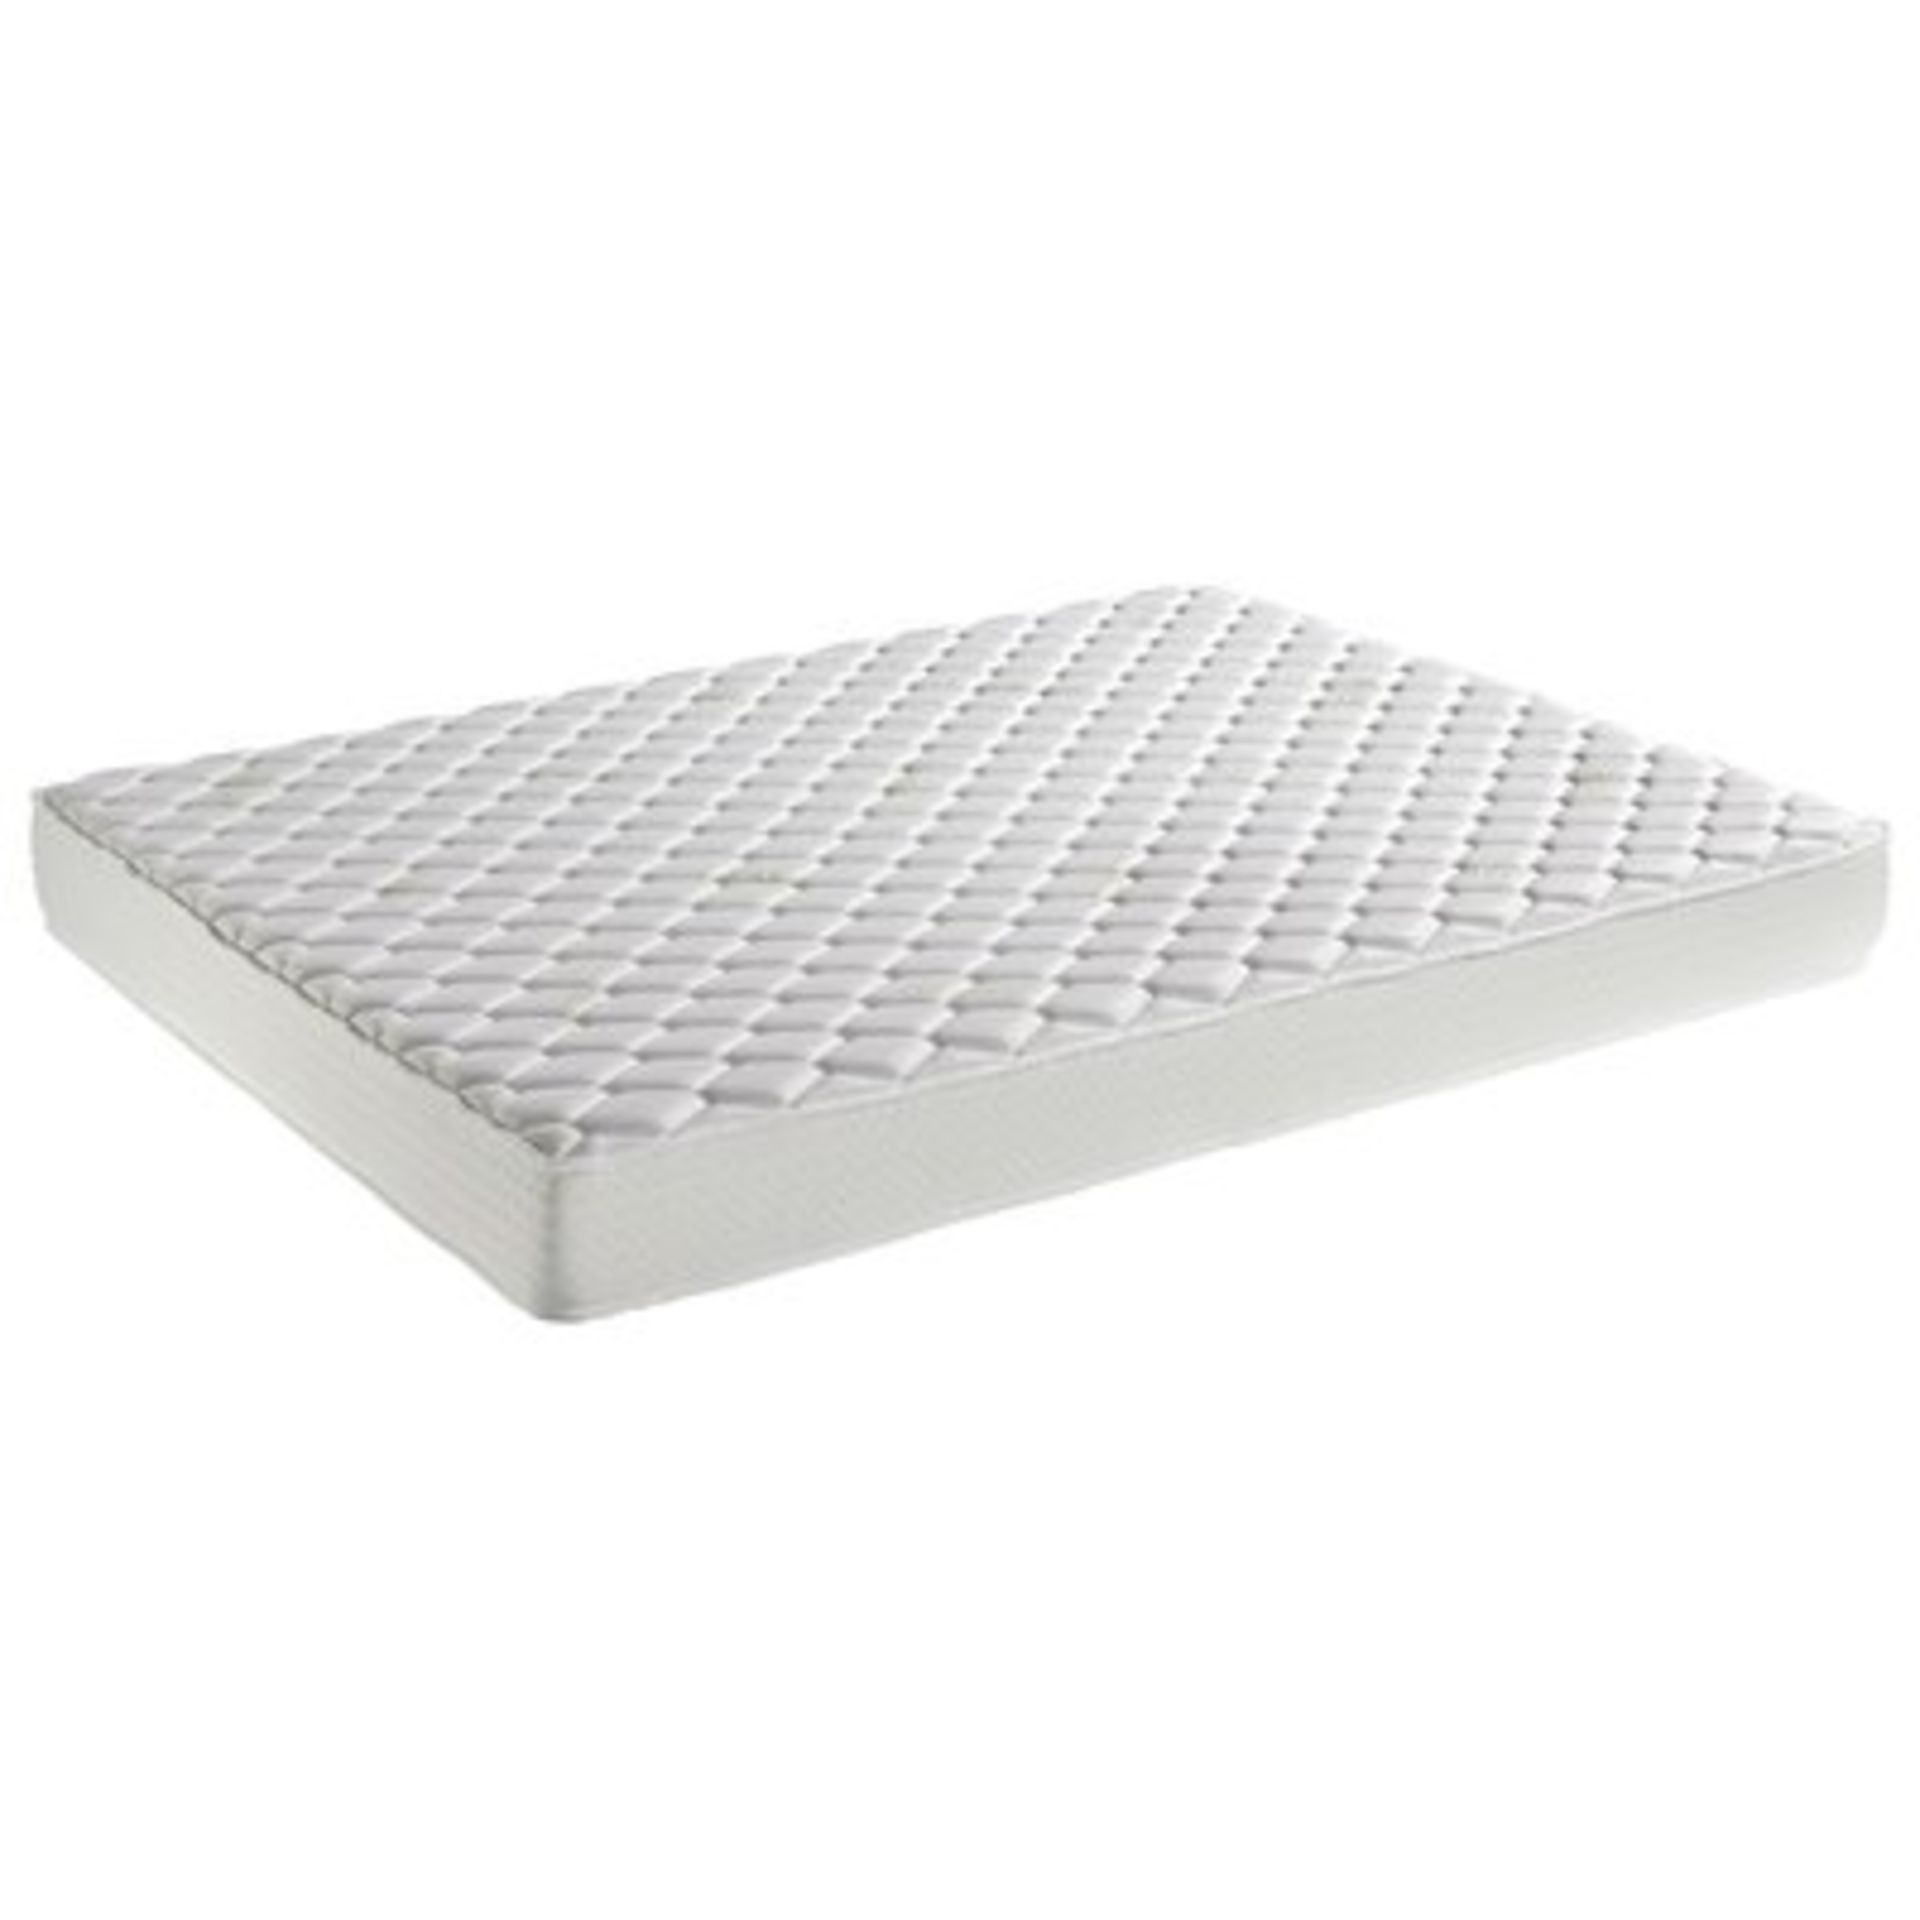 Dormeo Aloe Vera Deluxe Foam Mattress. Kingsize. The Aloe Vera Deluxe foam mattress is the deepest